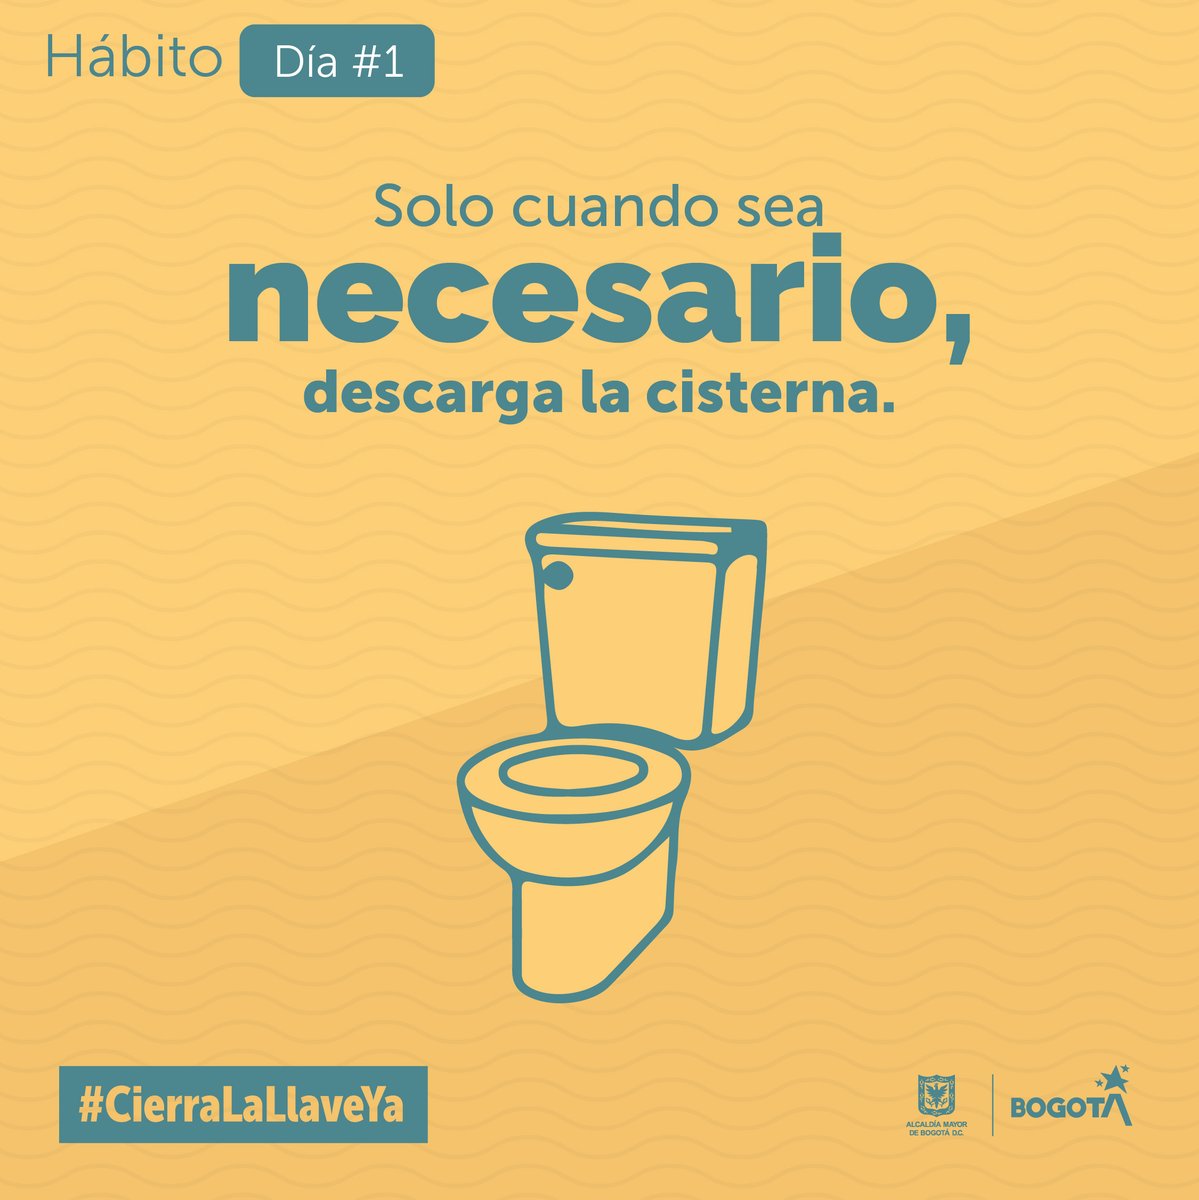 ¡Día 1 cambiando hábitos! Súmate a las buenas acciones: descarga la cisterna solo cuando sea estrictamente necesario y únete a nuestro esfuerzo por cuidar los recursos hídricos de Bogotá. #CierraLaLlaveYa.